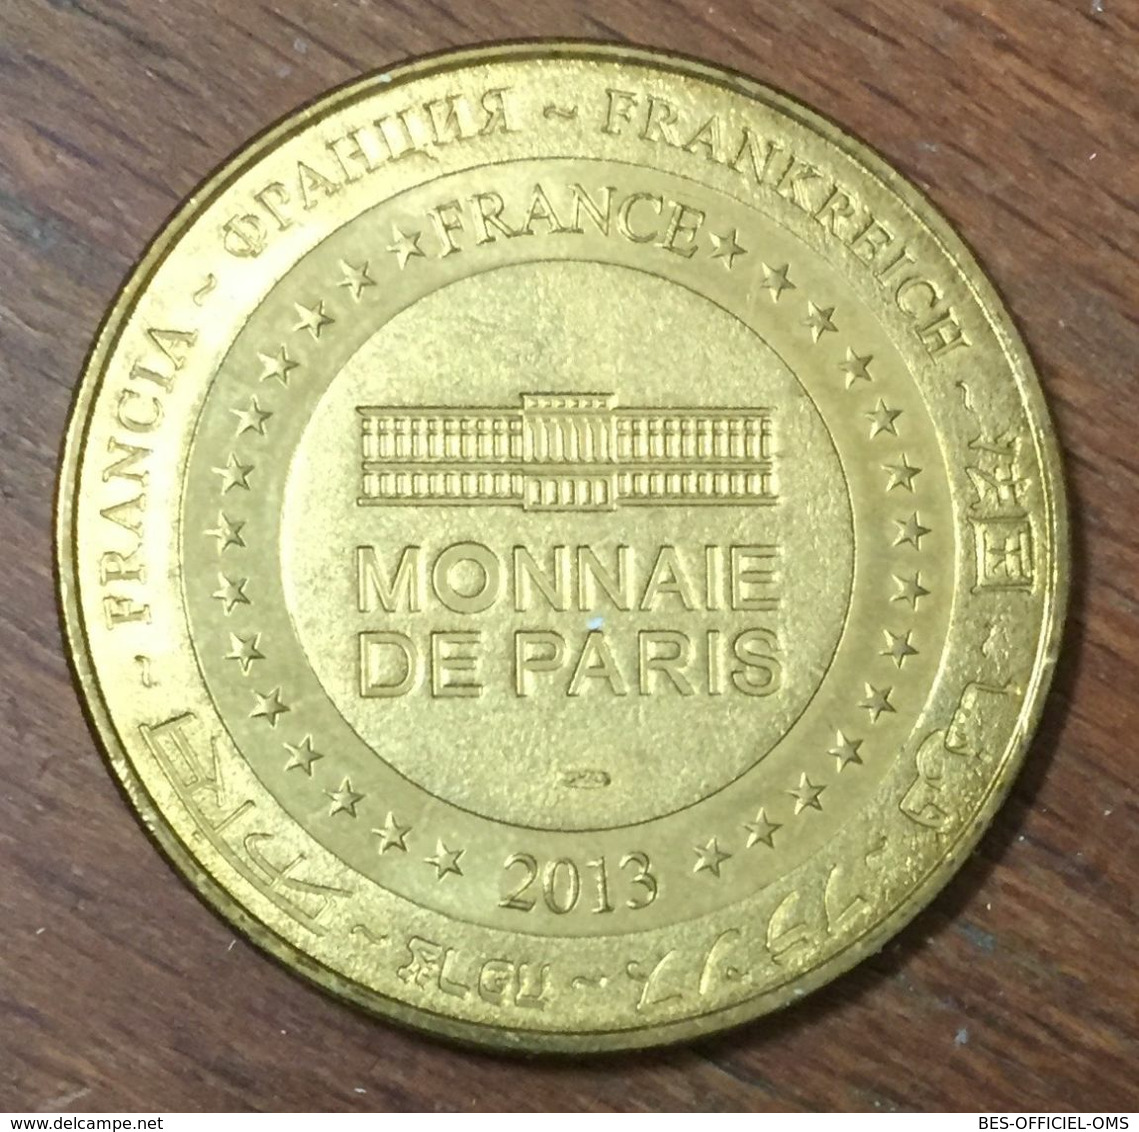 89 GUÉDELON CHANTIER MÉDIÉVAL MDP 2013 MÉDAILLE SOUVENIR MONNAIE DE PARIS JETON TOURISTIQUE MEDALS COINS TOKENS - 2013